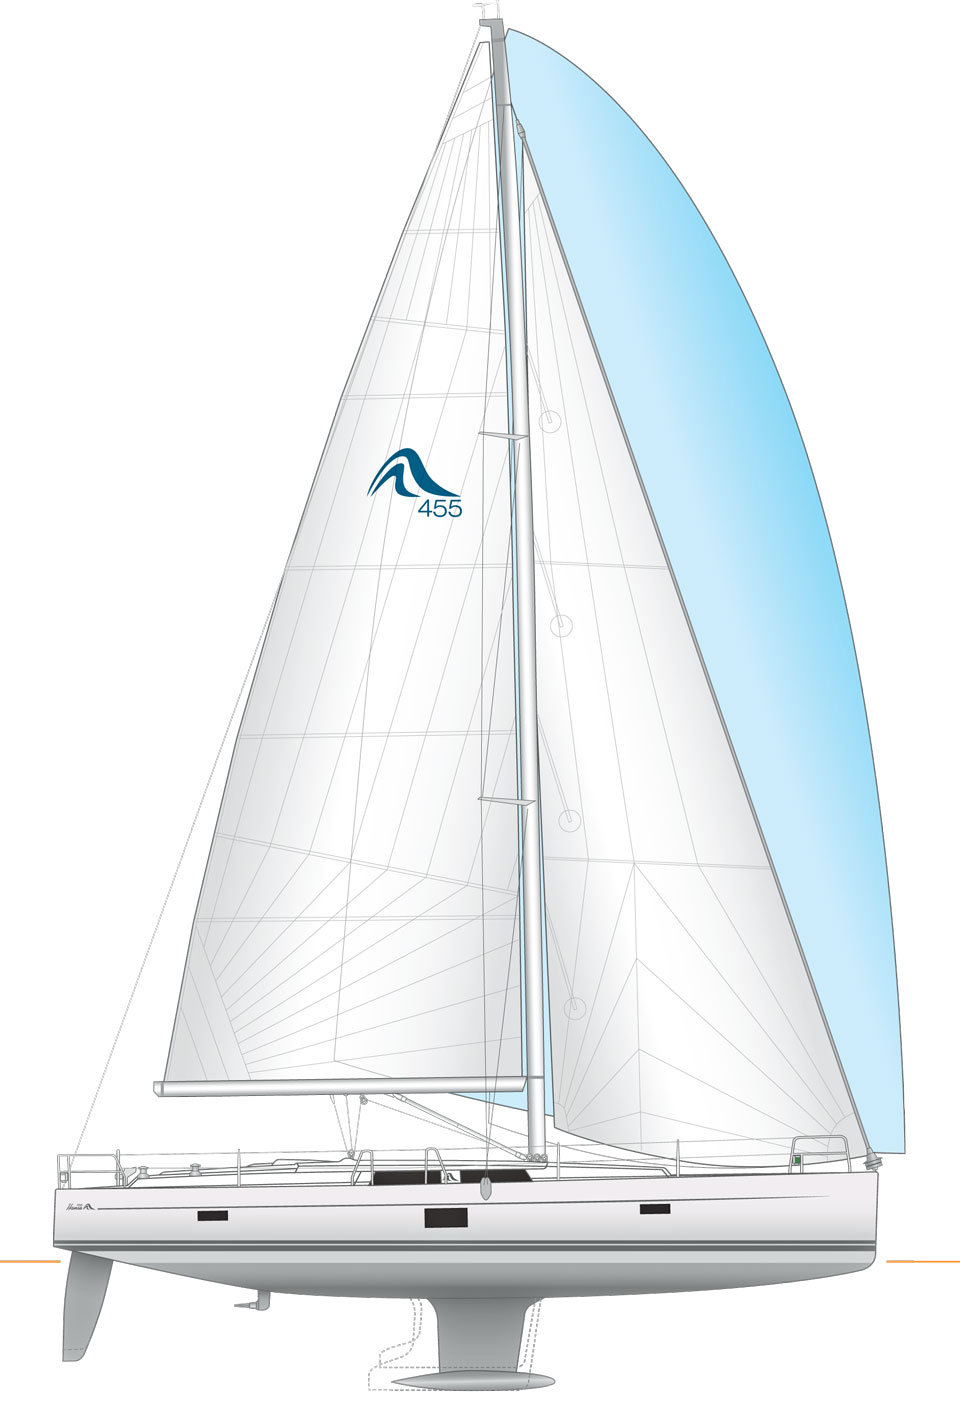 Hanse 455 sailplan and underwater profile